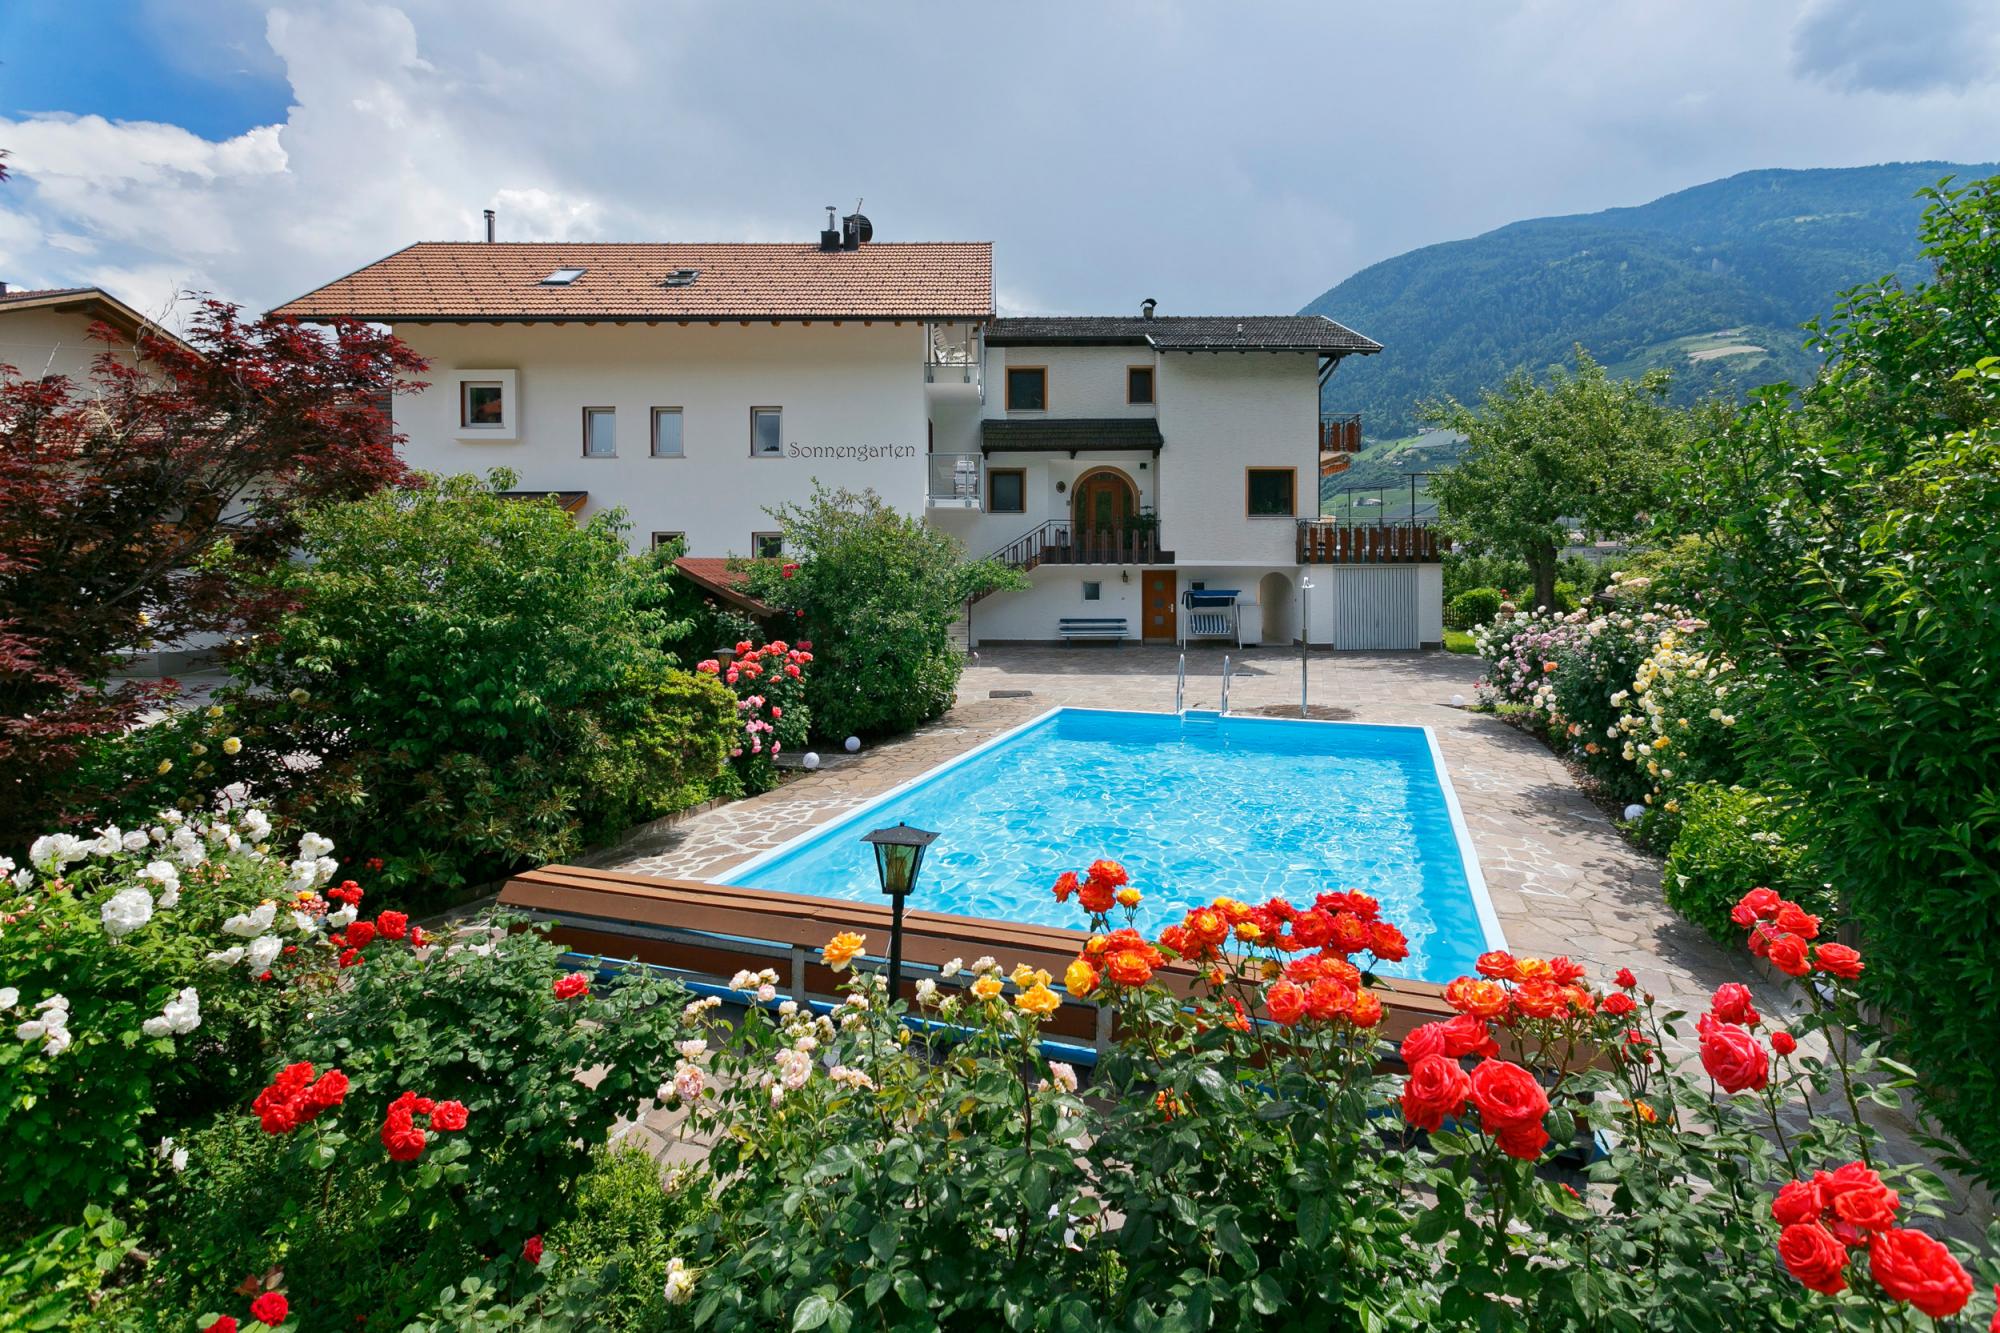 Residence Sonnengarten - swimming pool